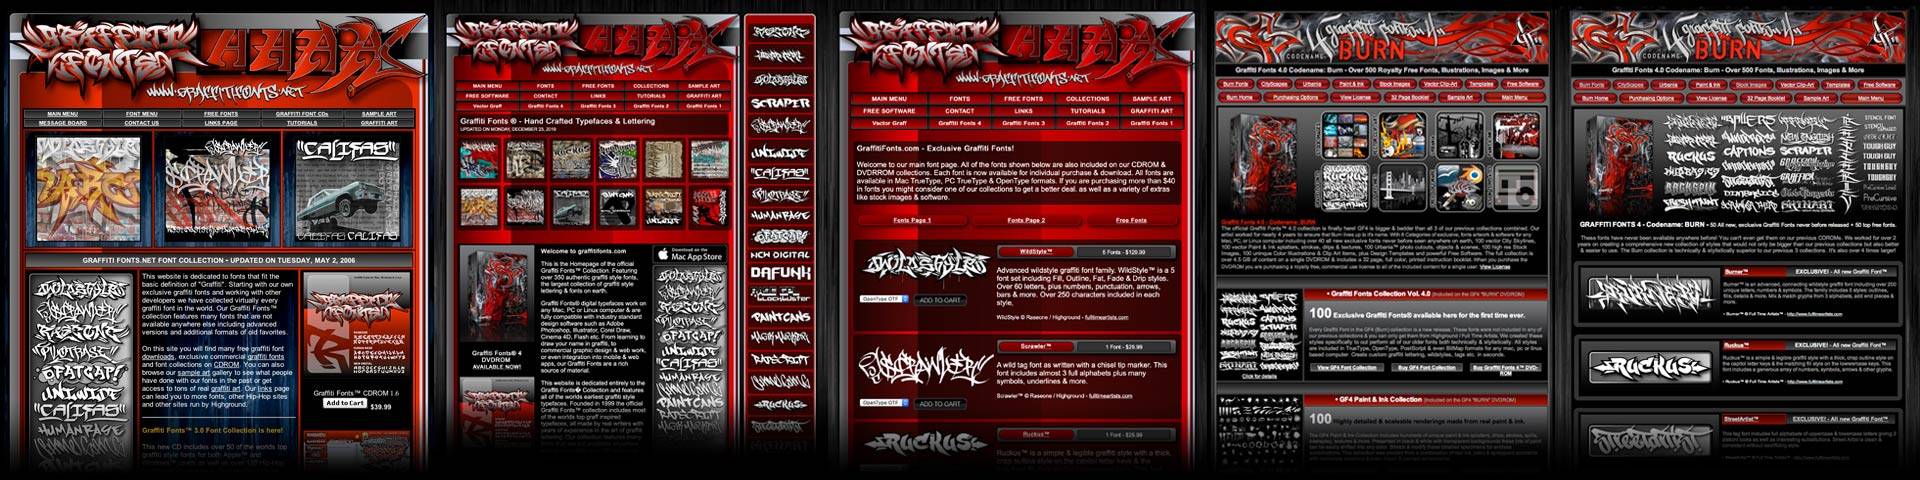 graffitifonts.net website screenshots